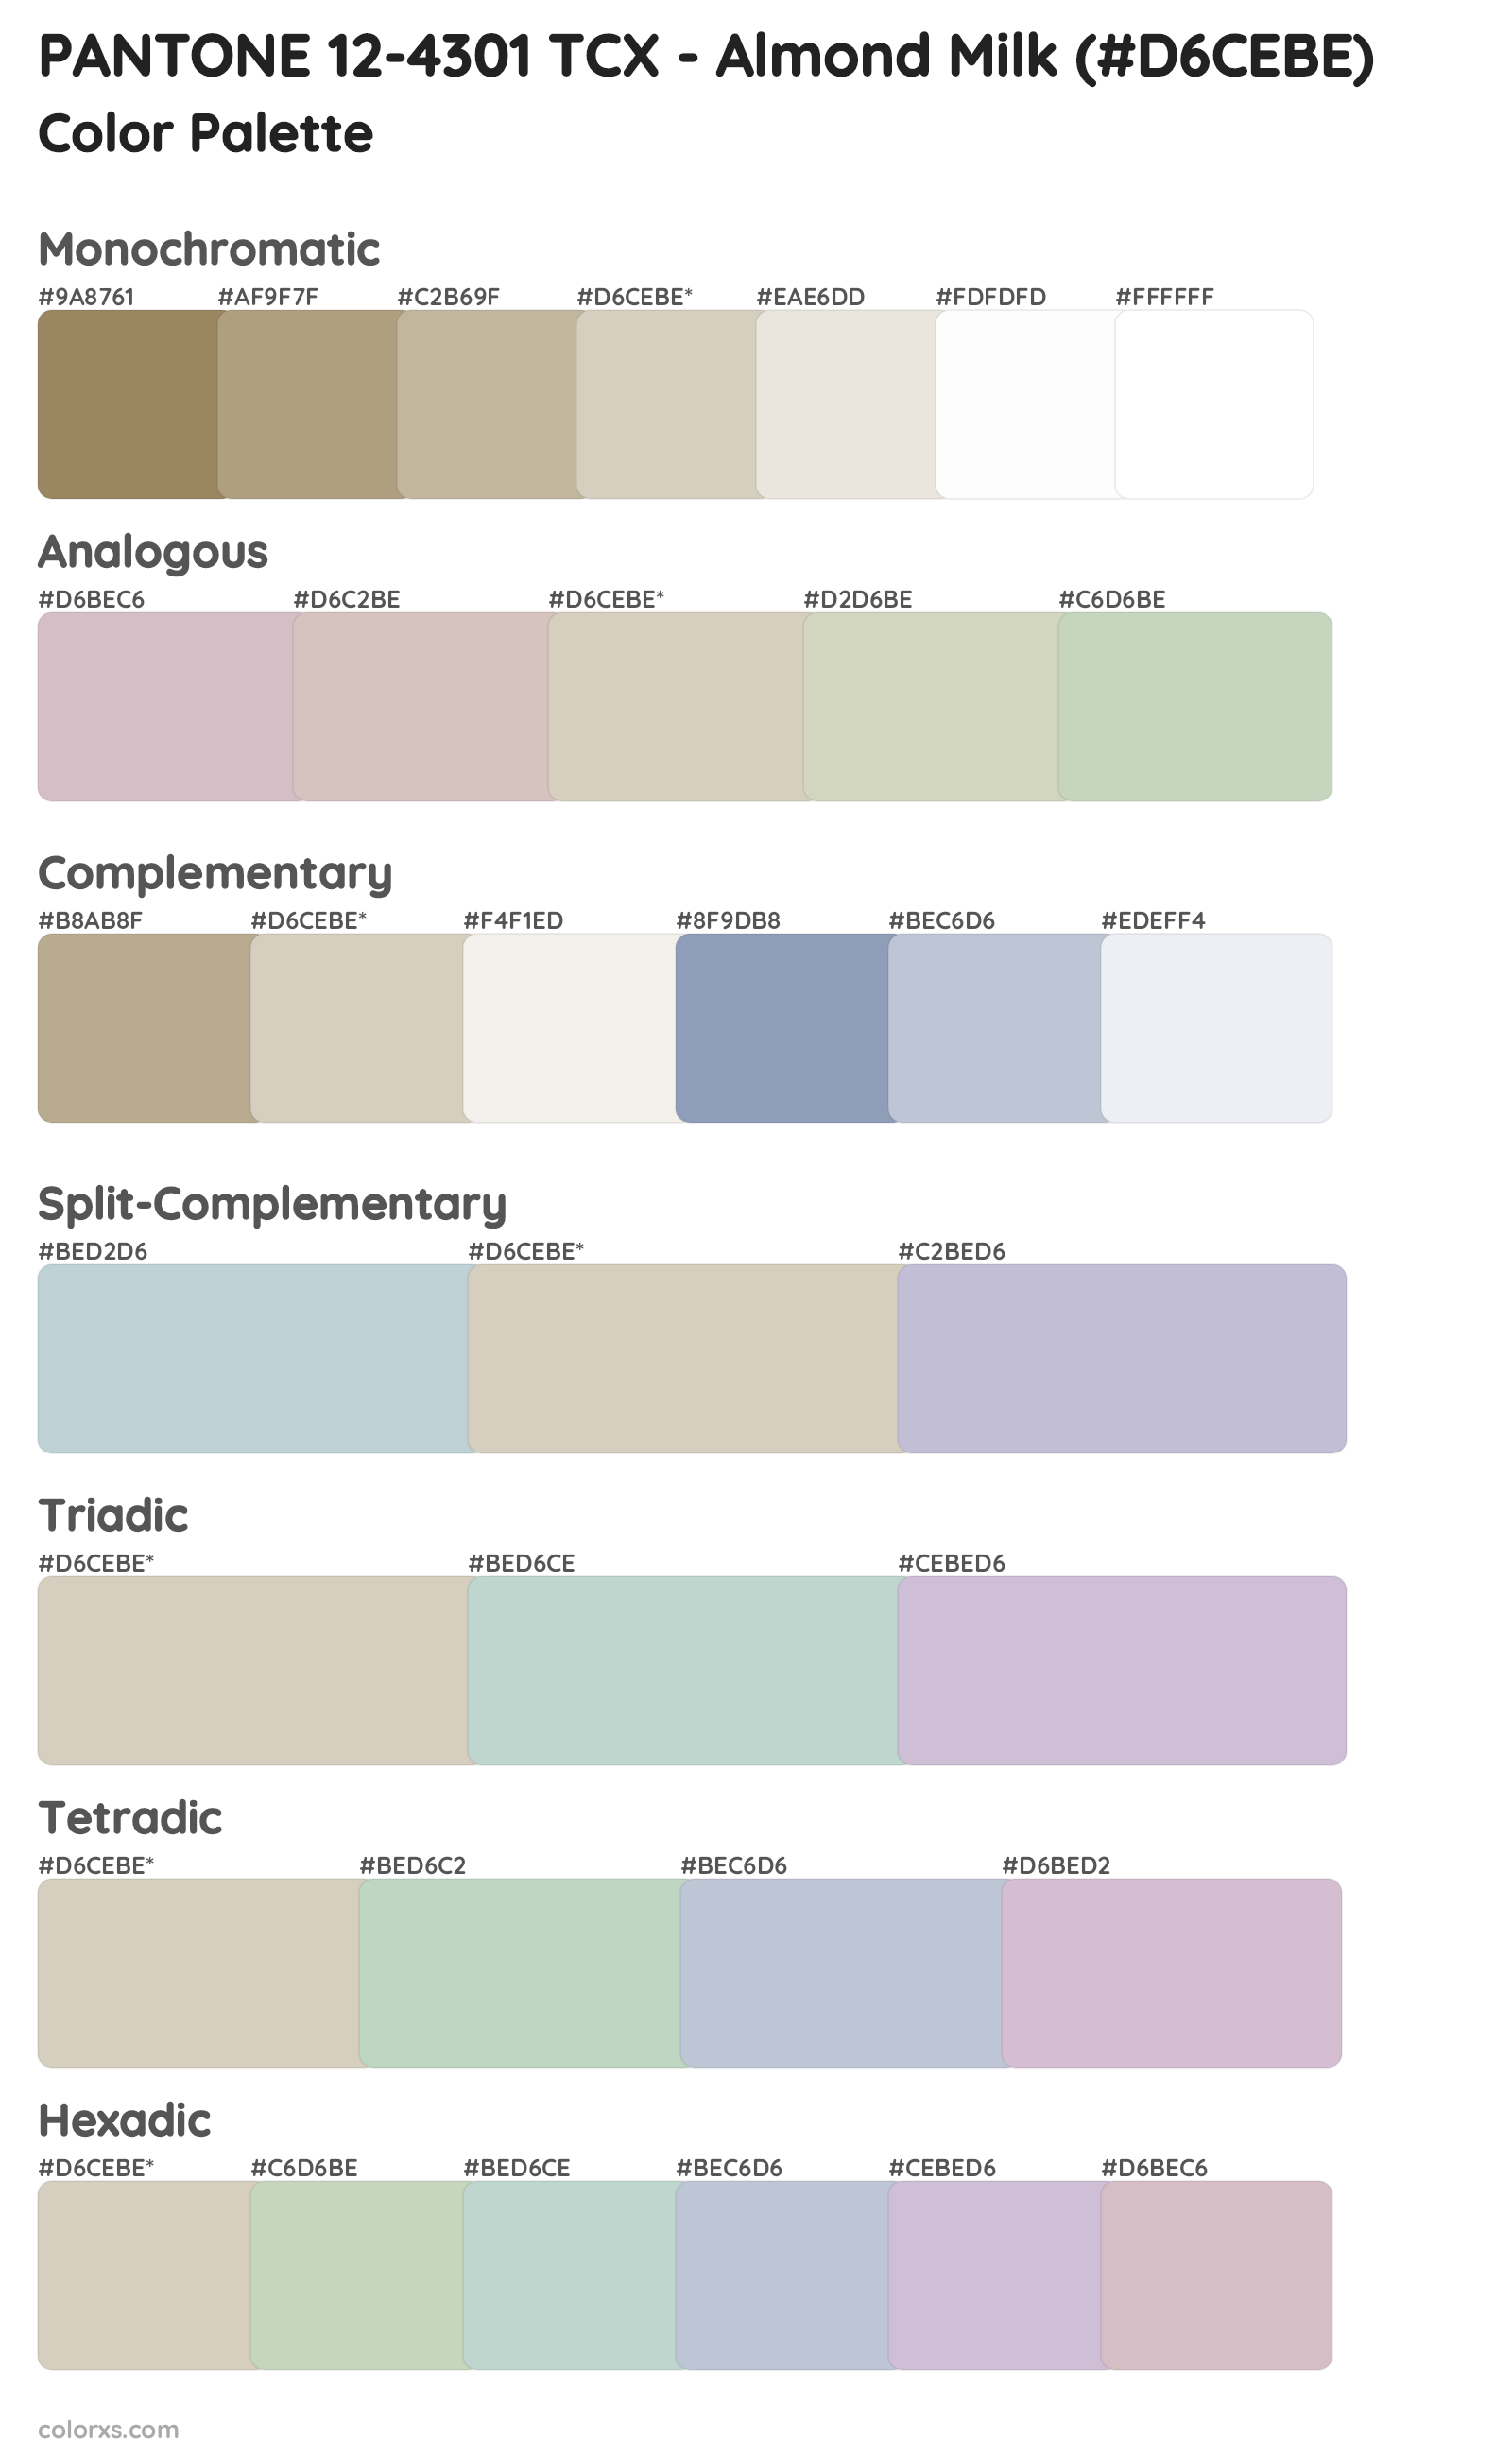 PANTONE 12-4301 TCX - Almond Milk Color Scheme Palettes